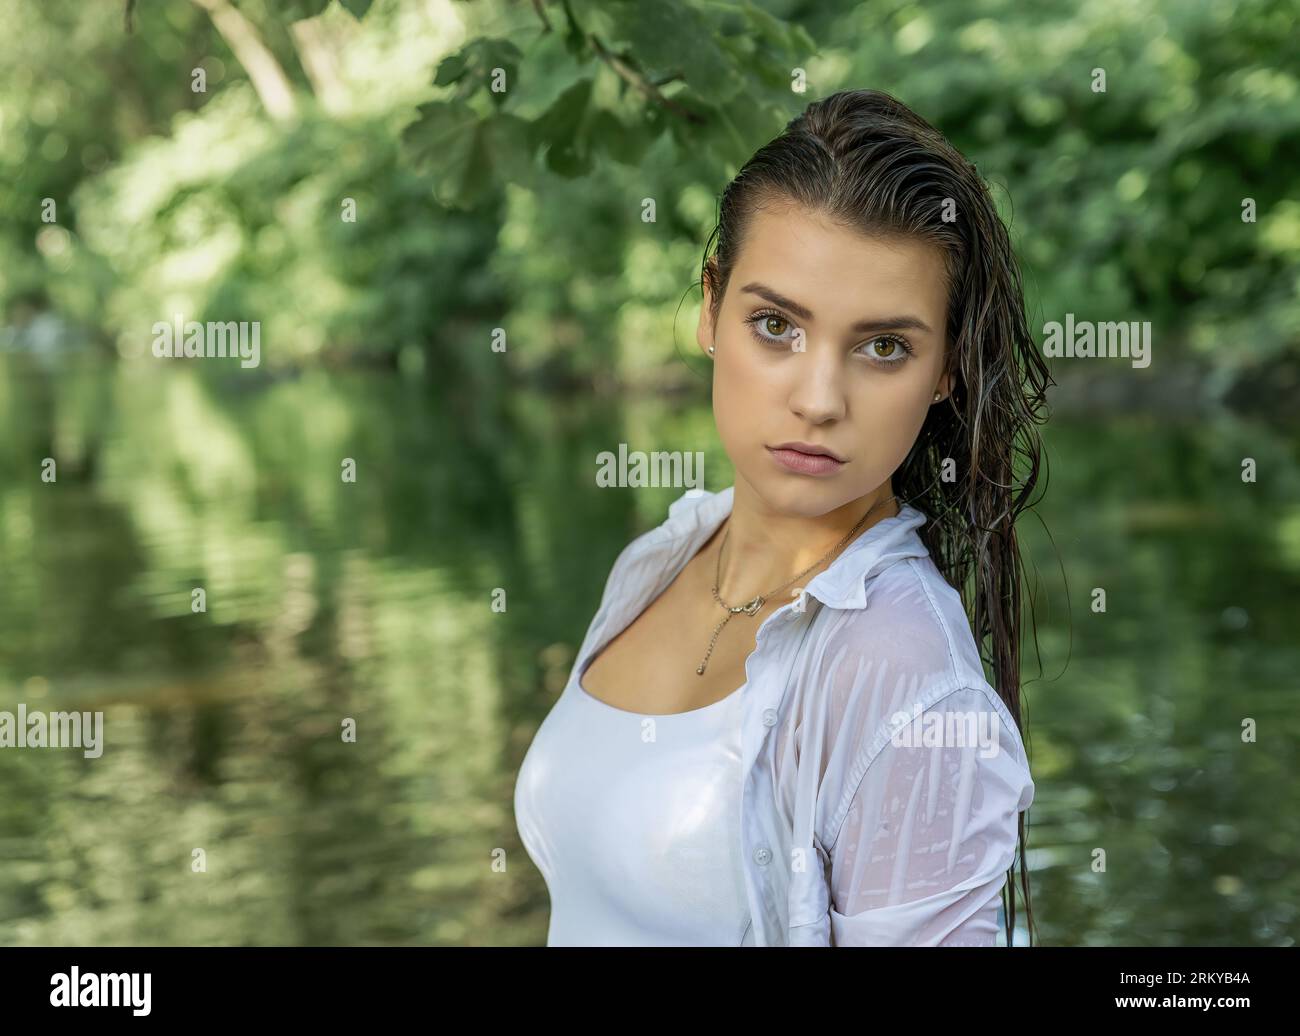 Portrait passionnant d'une jeune fille posant avec les cheveux mouillés dans la rivière. Horizontalement. Banque D'Images